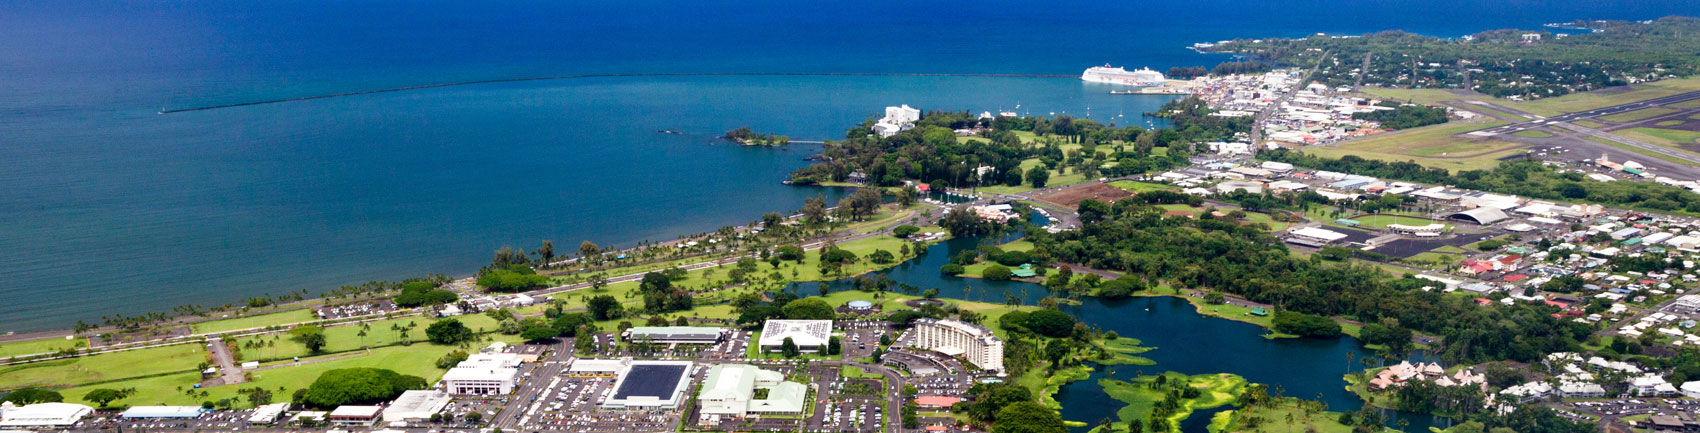 ハワイ島ヒロの航空写真